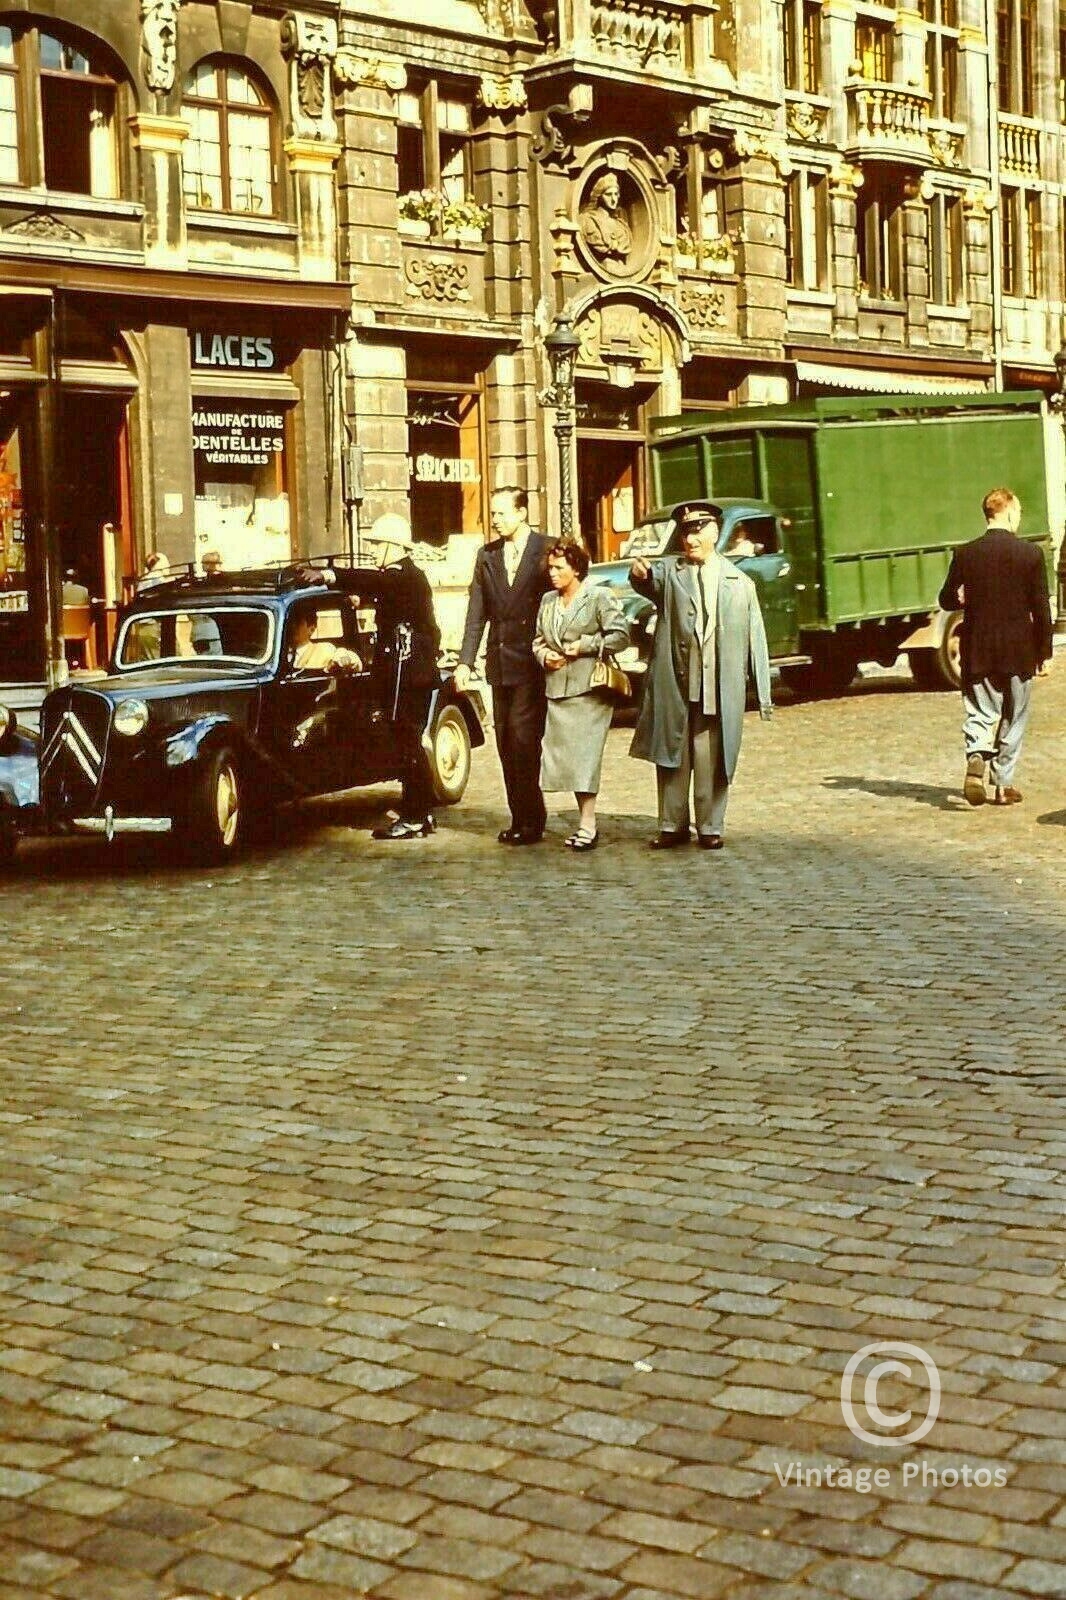 1950s Brussels Street Scene - Lace Shop